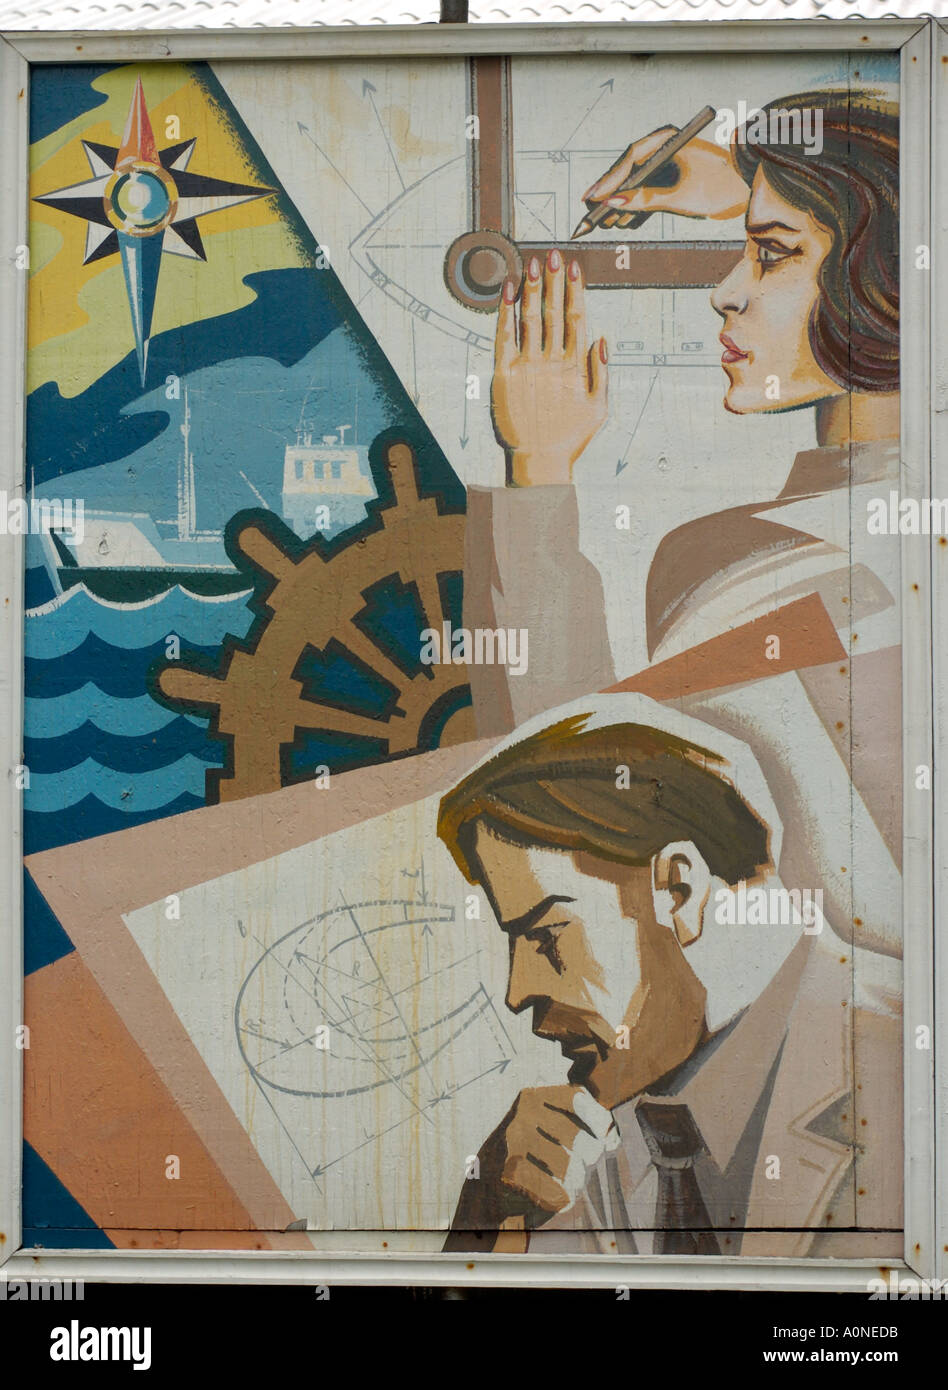 Époque soviétique peinture murale peinte sur un mur extérieur d'un chantier naval de l'île de Sakhalin Nevelsk Russie 2004 Banque D'Images